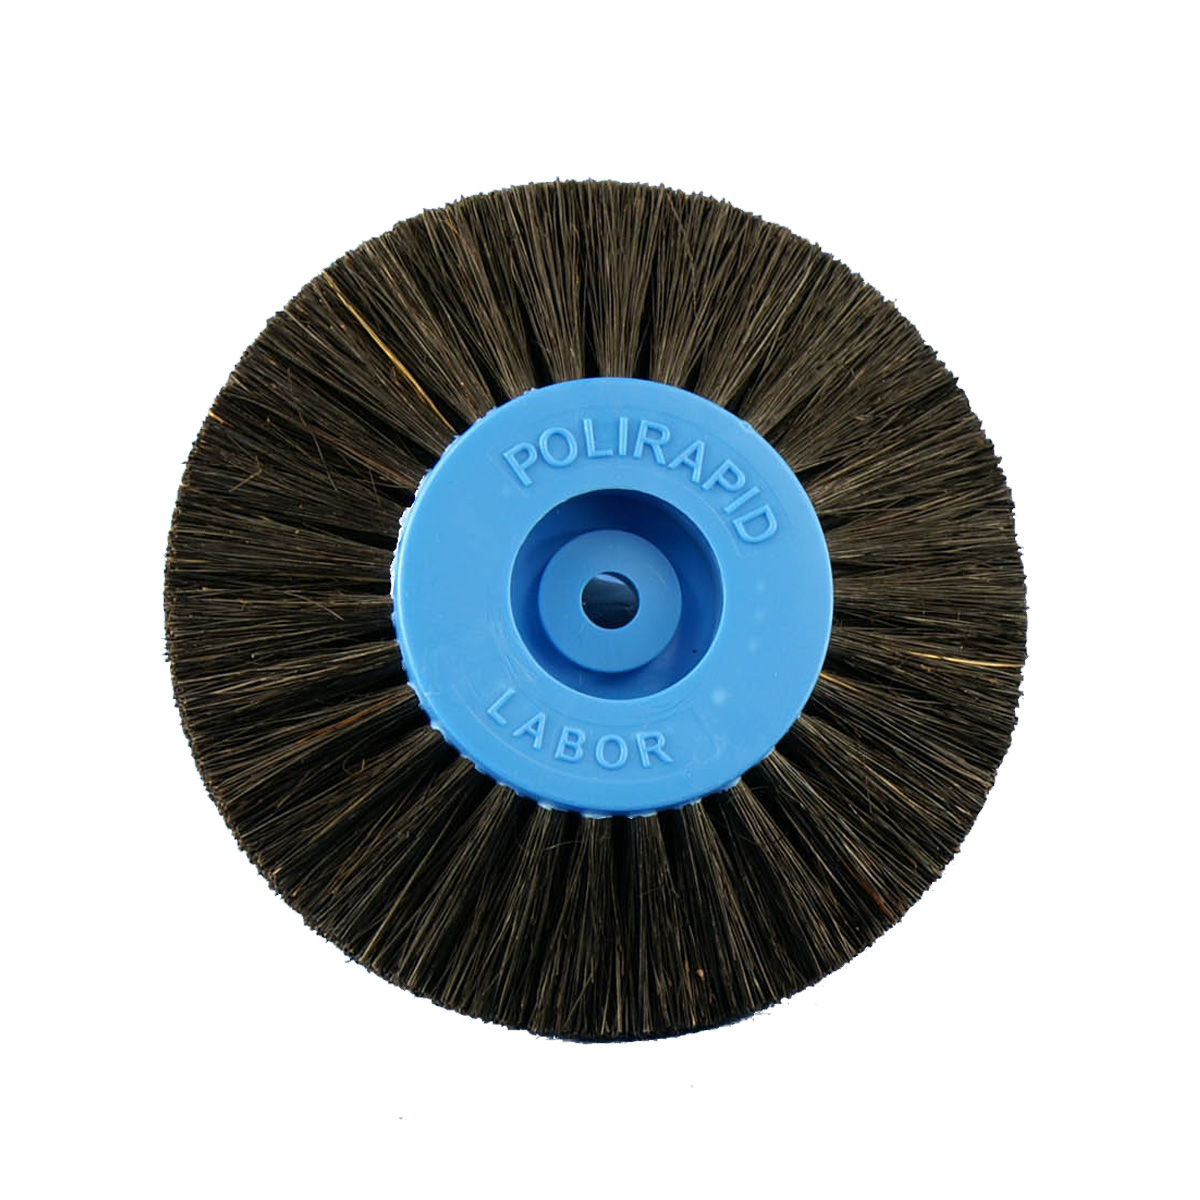 Rundbürste, schwarze Chungking Borsten, 4-reihig, spitz, Ø 80 mm, mit Kunststoffkern, blau